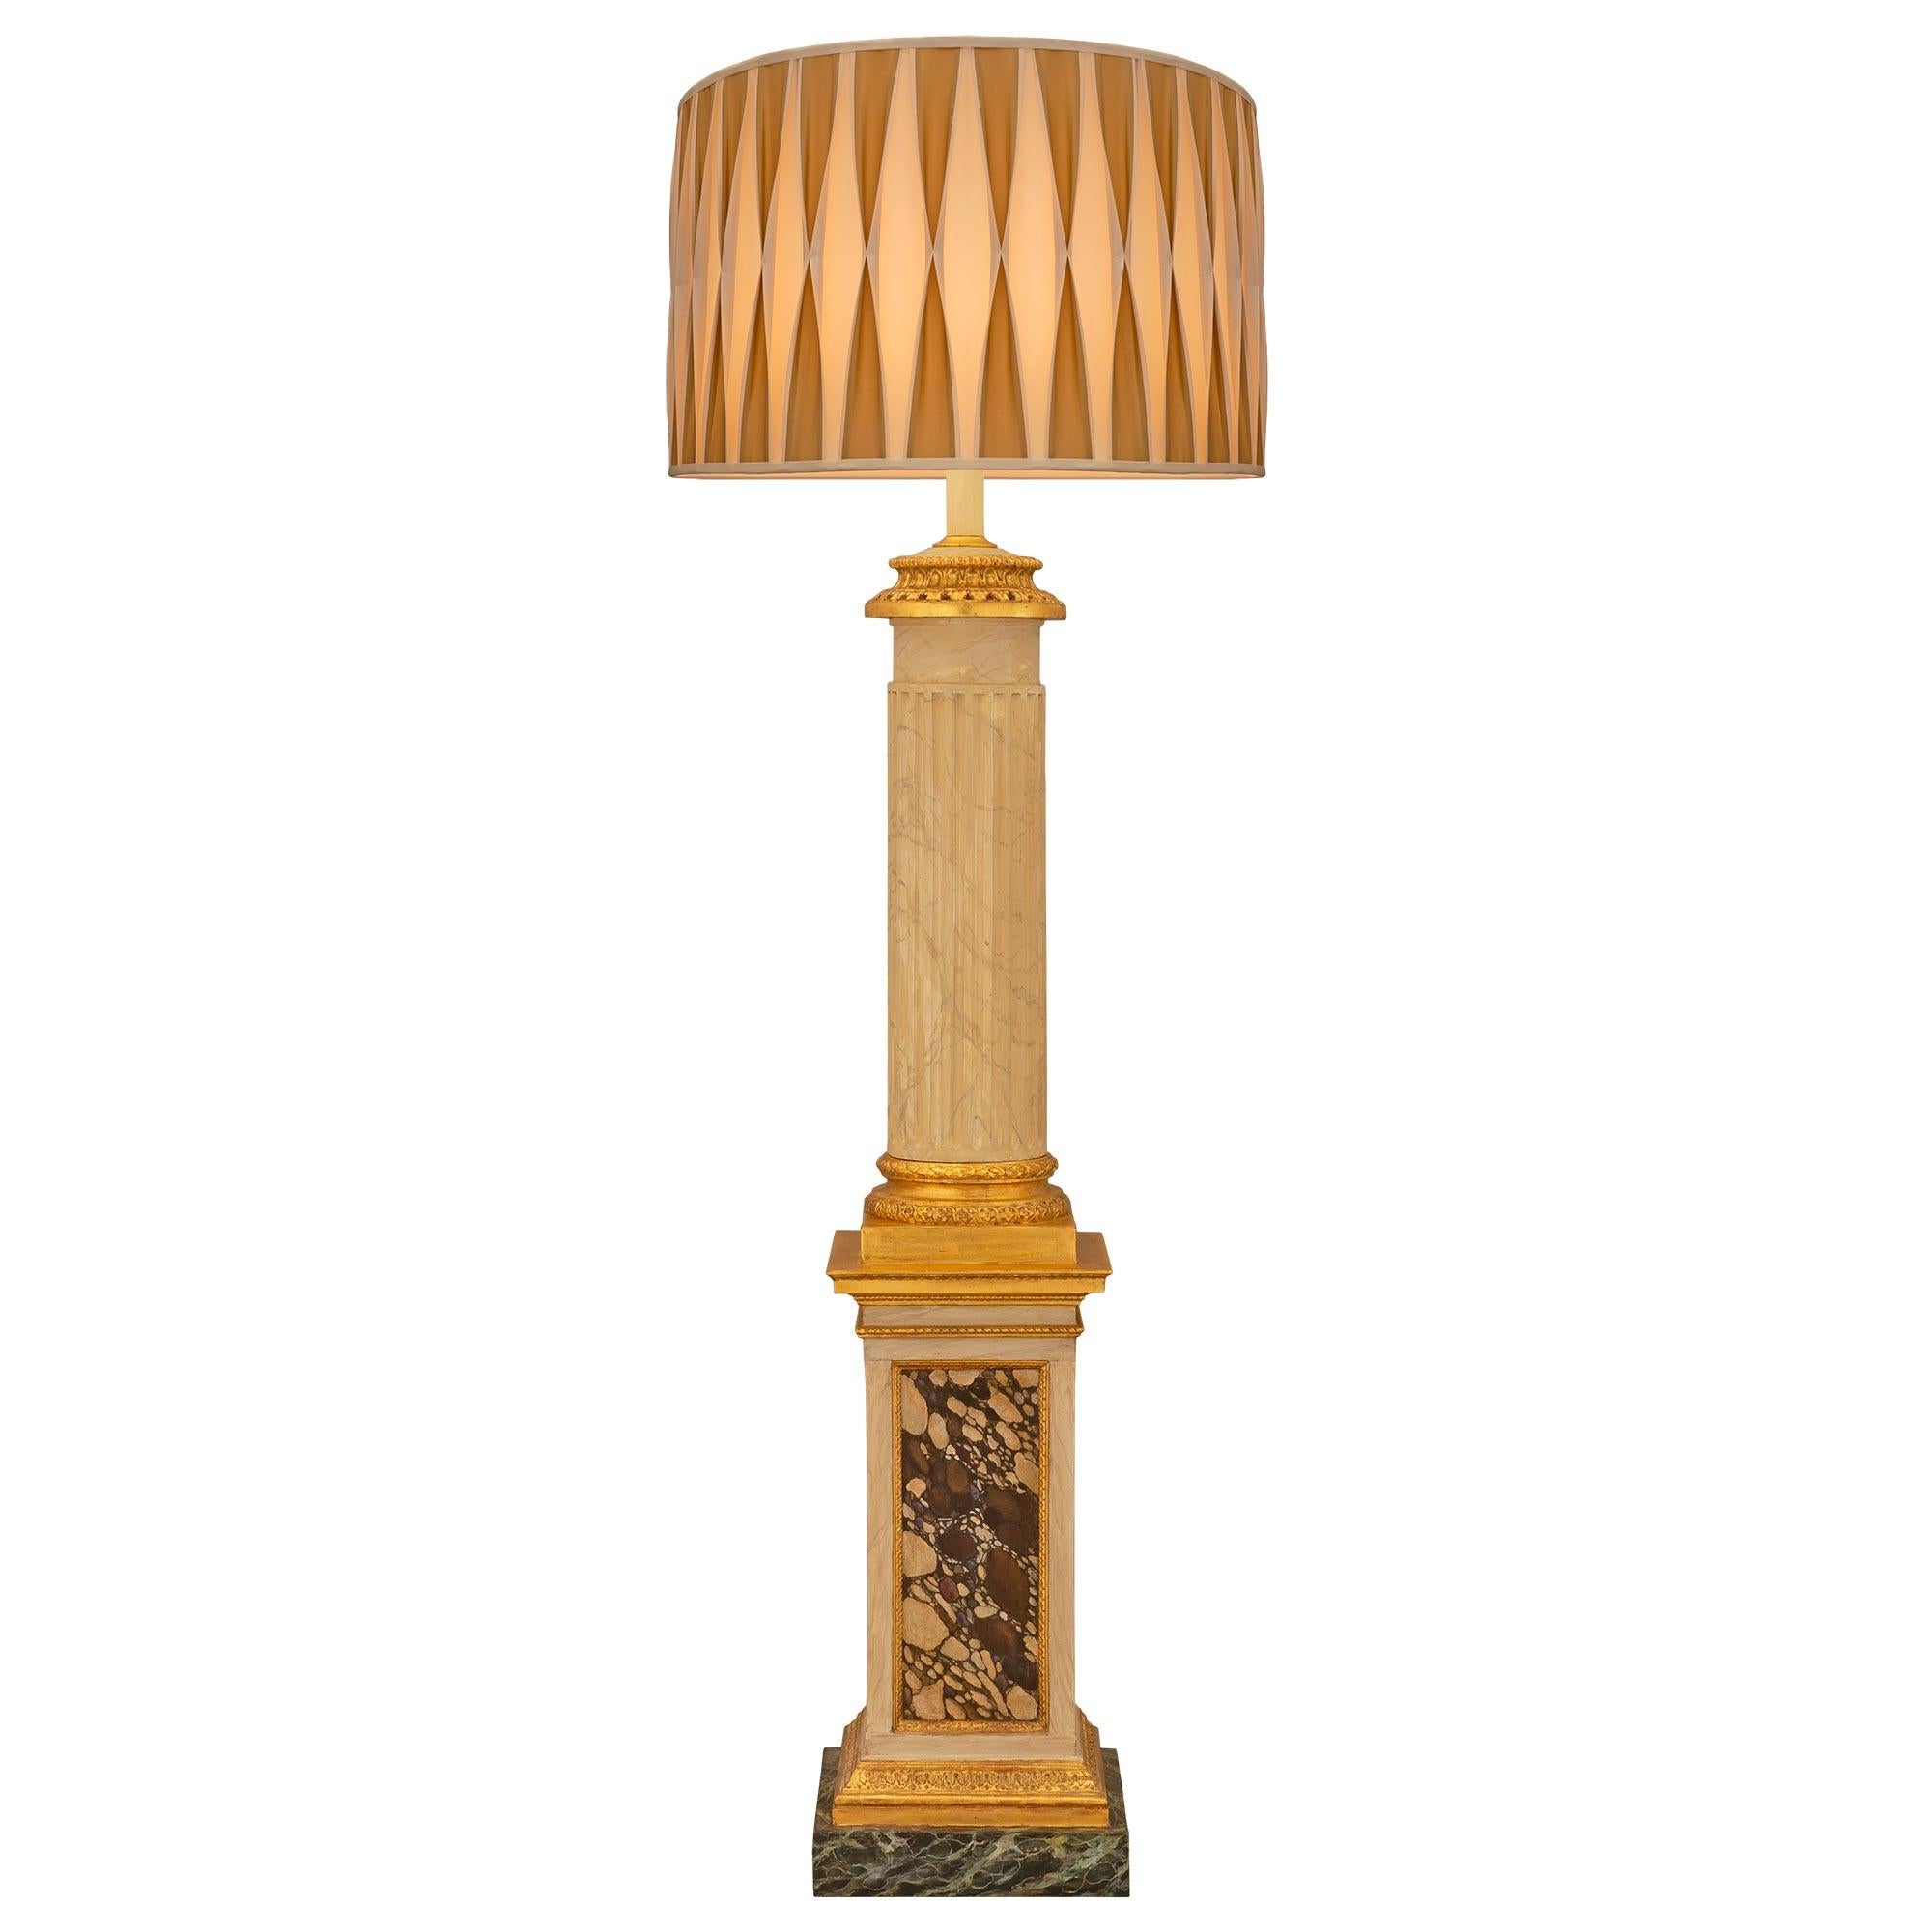 Impressionnant lampadaire néoclassique italien du XVIIIe siècle en bois patiné, bois doré et faux marbre peint. Le lampadaire repose sur une magnifique base carrée en faux marbre Verde Antico peint, sous un élégant bandeau en bois doré tacheté et